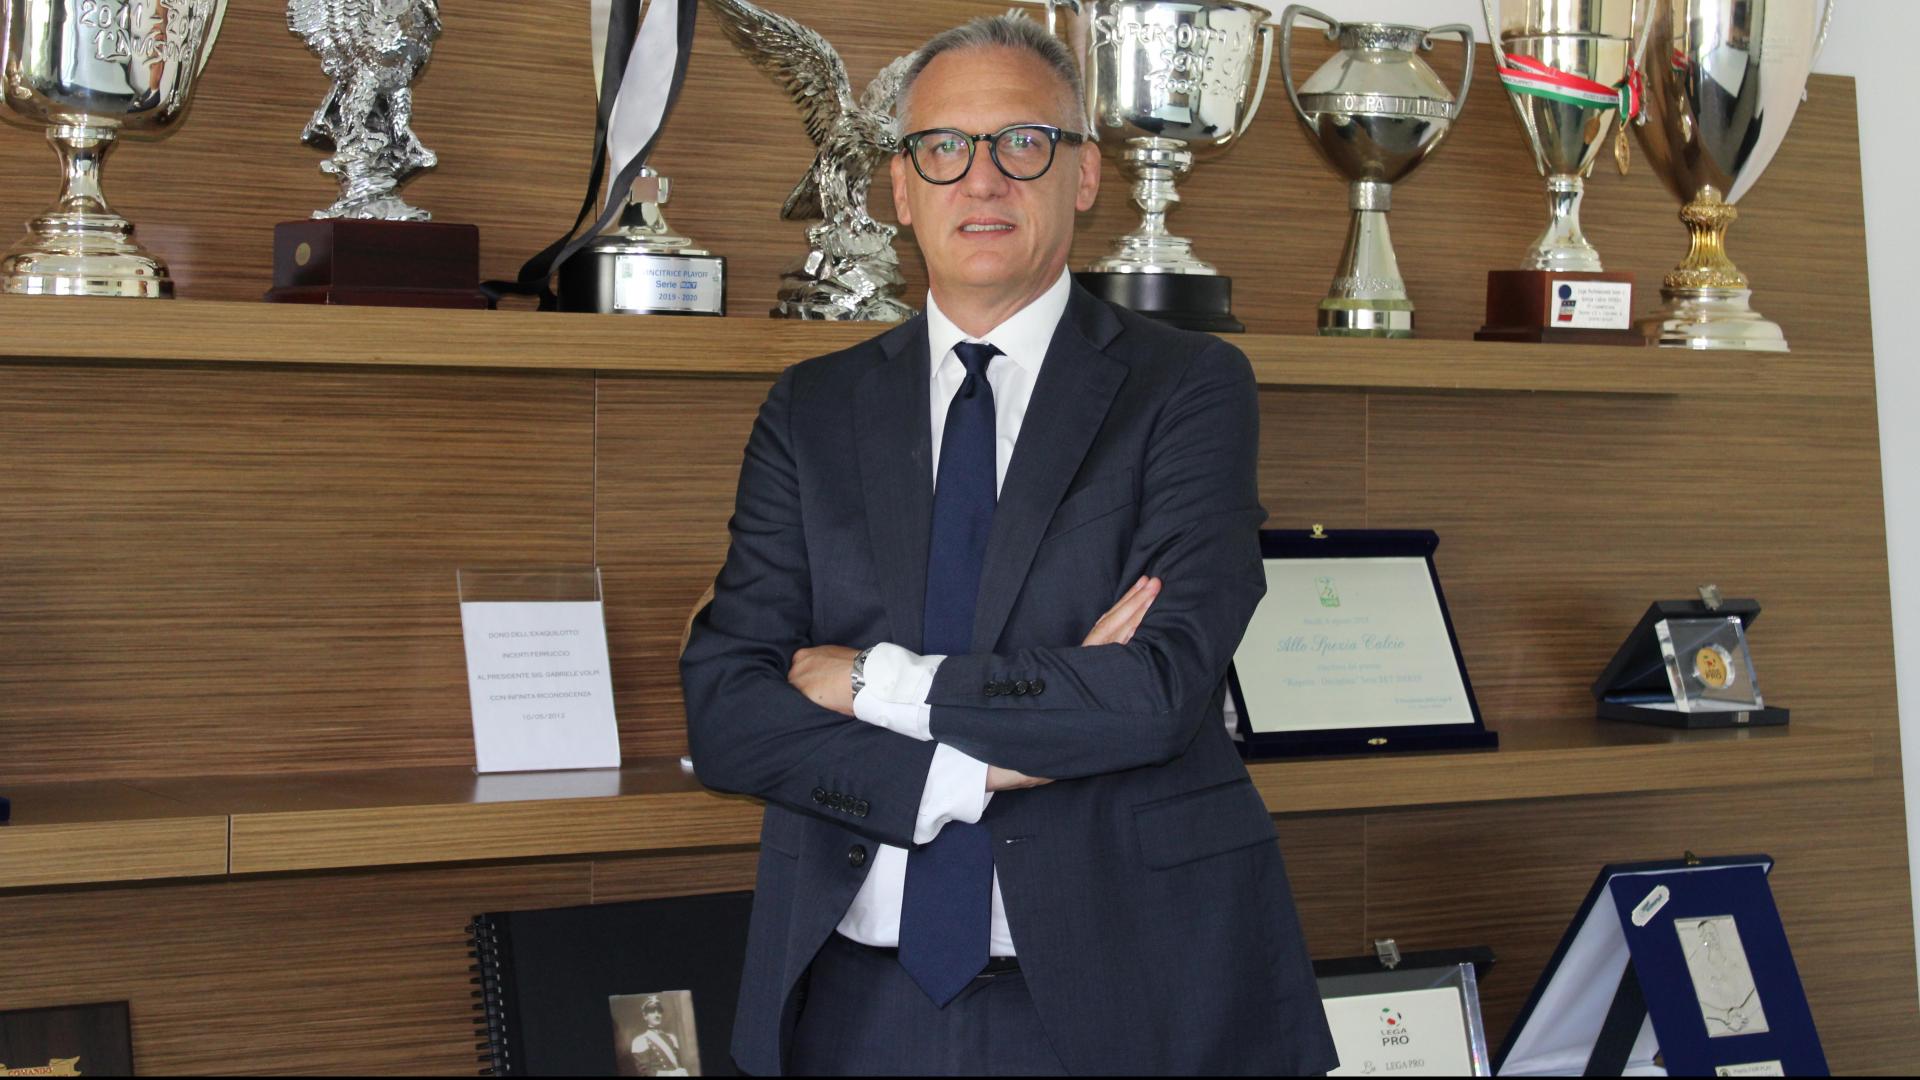 Official announcement: Andrea Gazzoli new CEO of Spezia Calcio